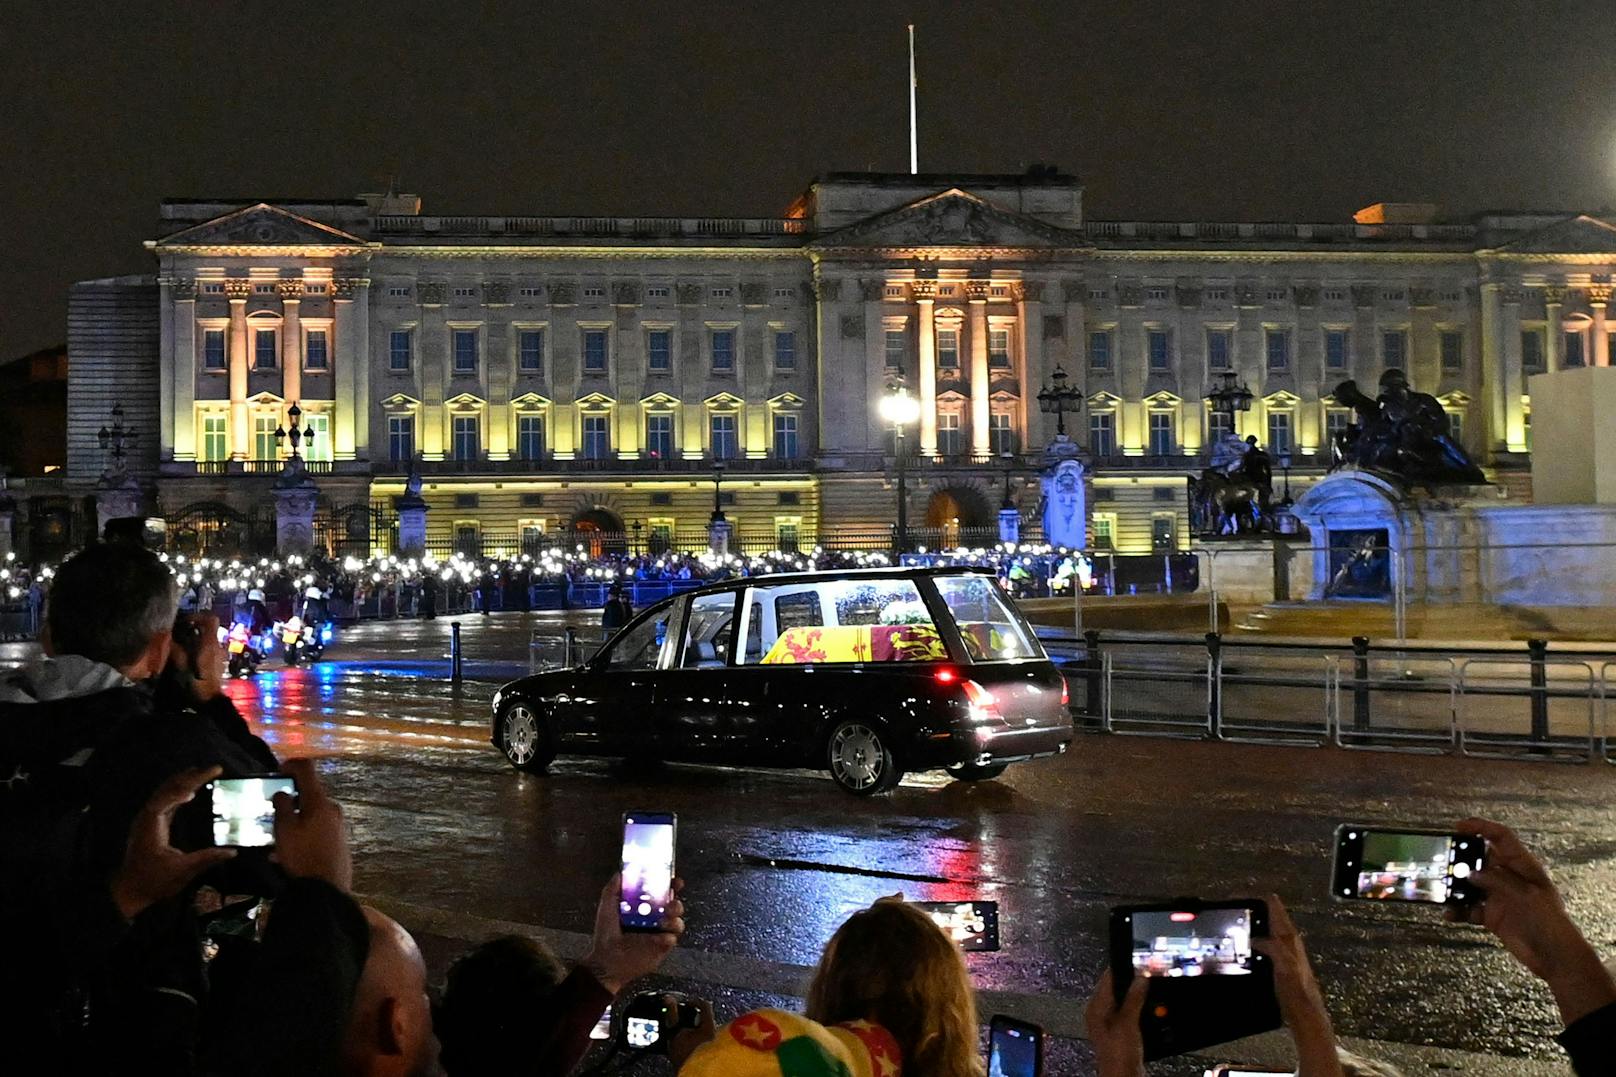 Charles empfing Sarg der Queen im Buckingham Palace